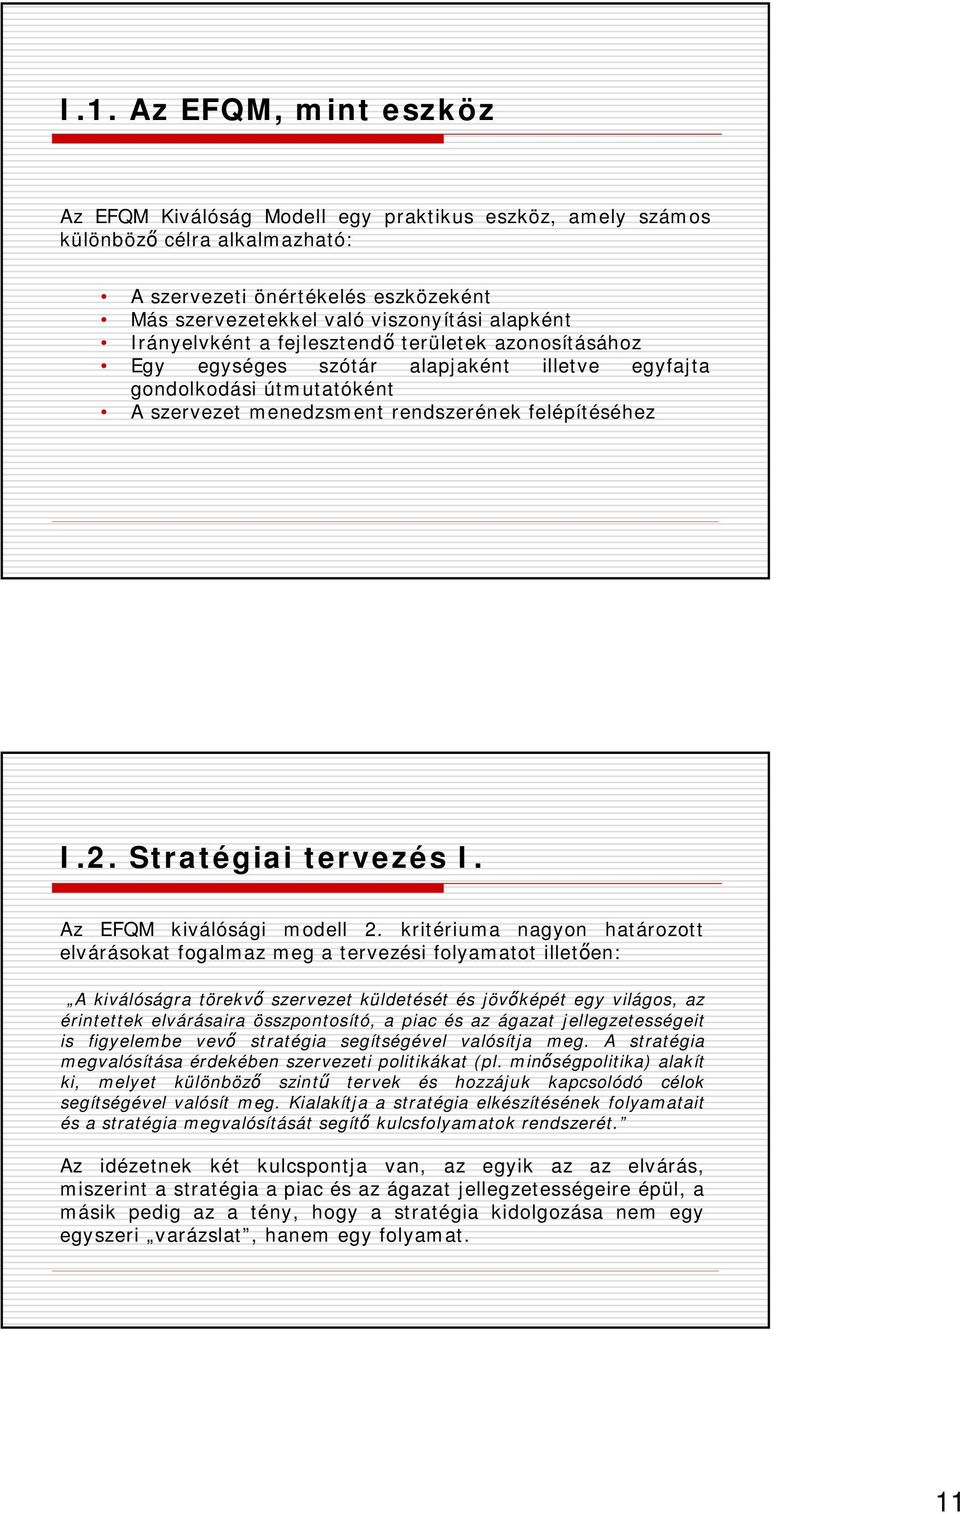 Stratégiai tervezés I. Az EFQM kiválósági modell 2.